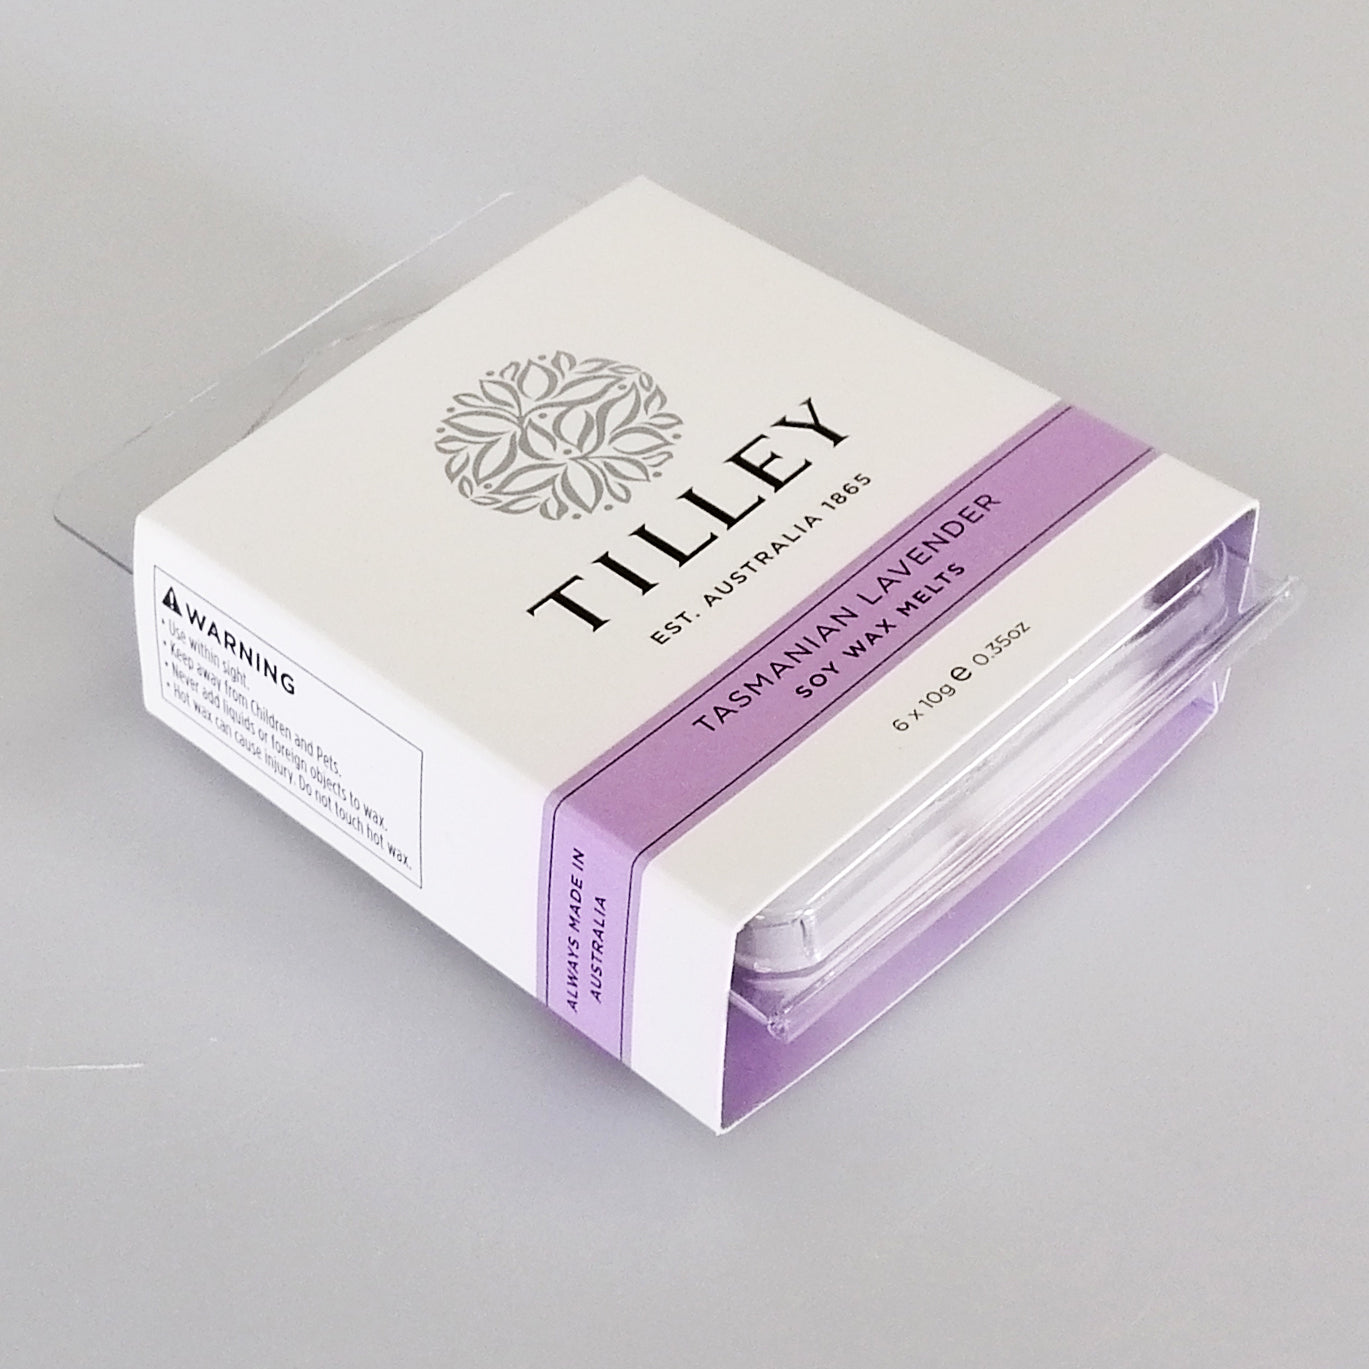 Tilley - Soy Fragrance Melts - Tasmanian Lavender